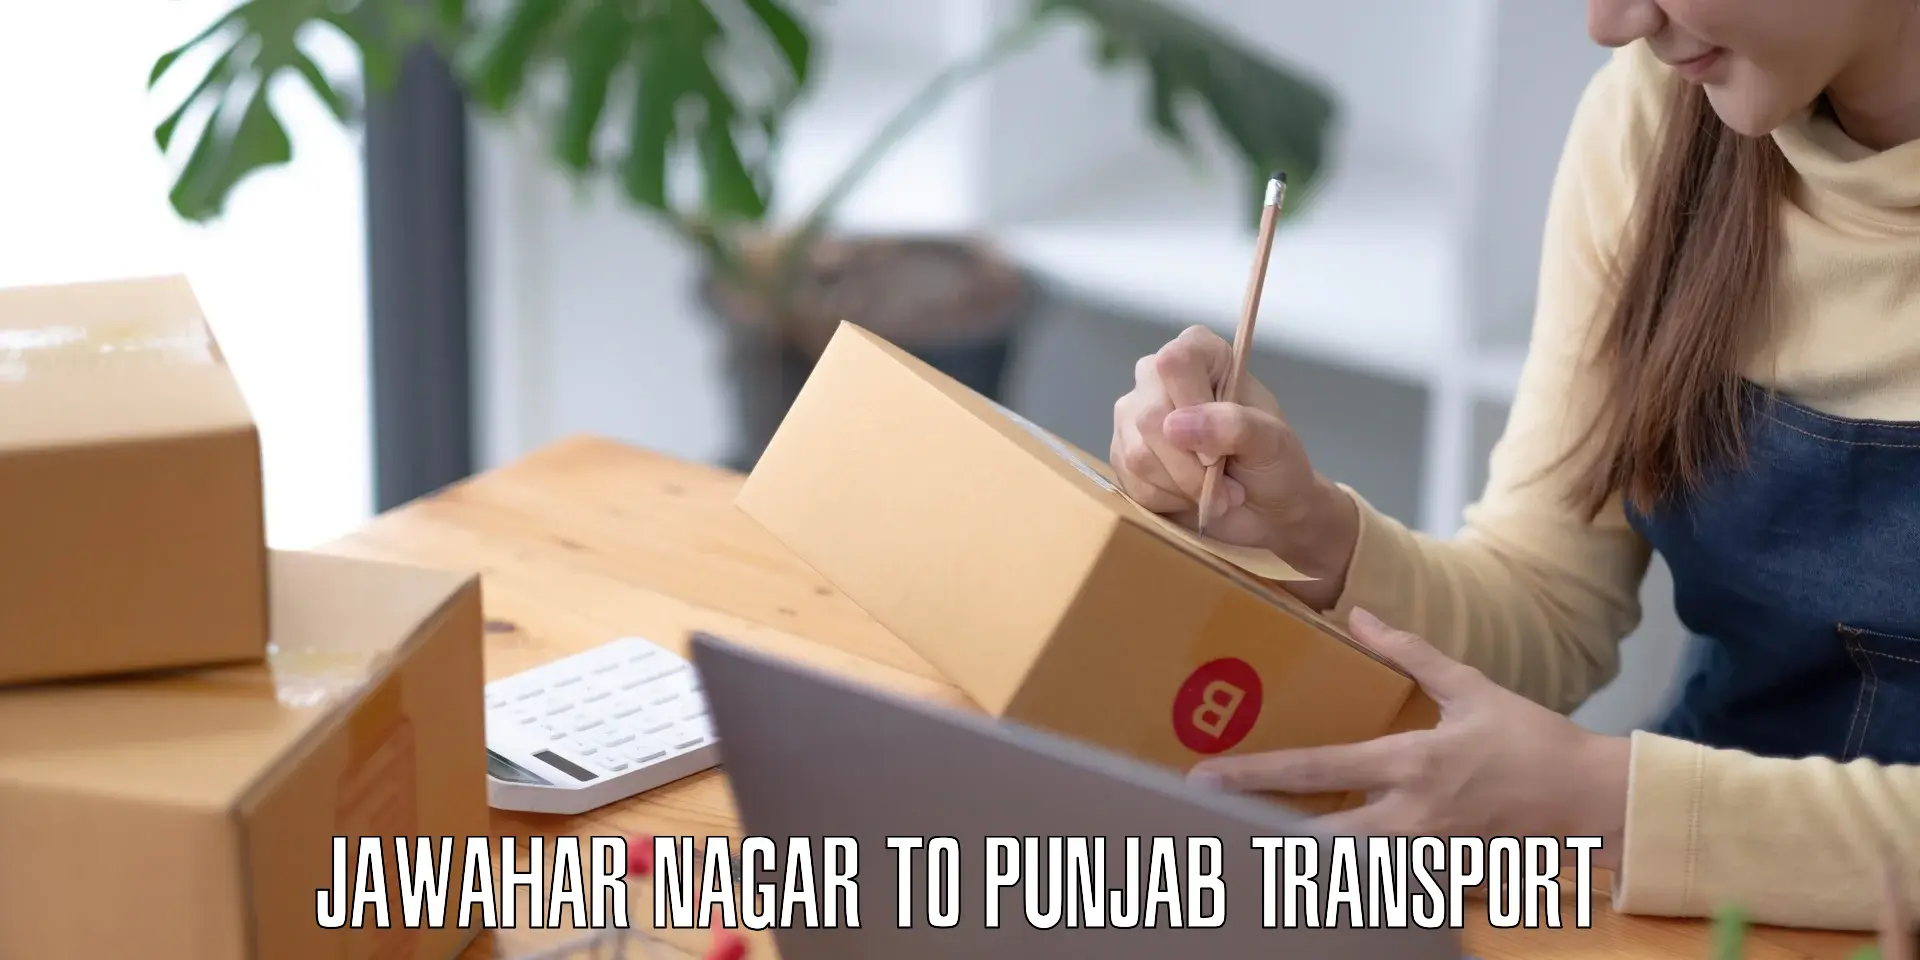 Two wheeler parcel service Jawahar Nagar to Punjab